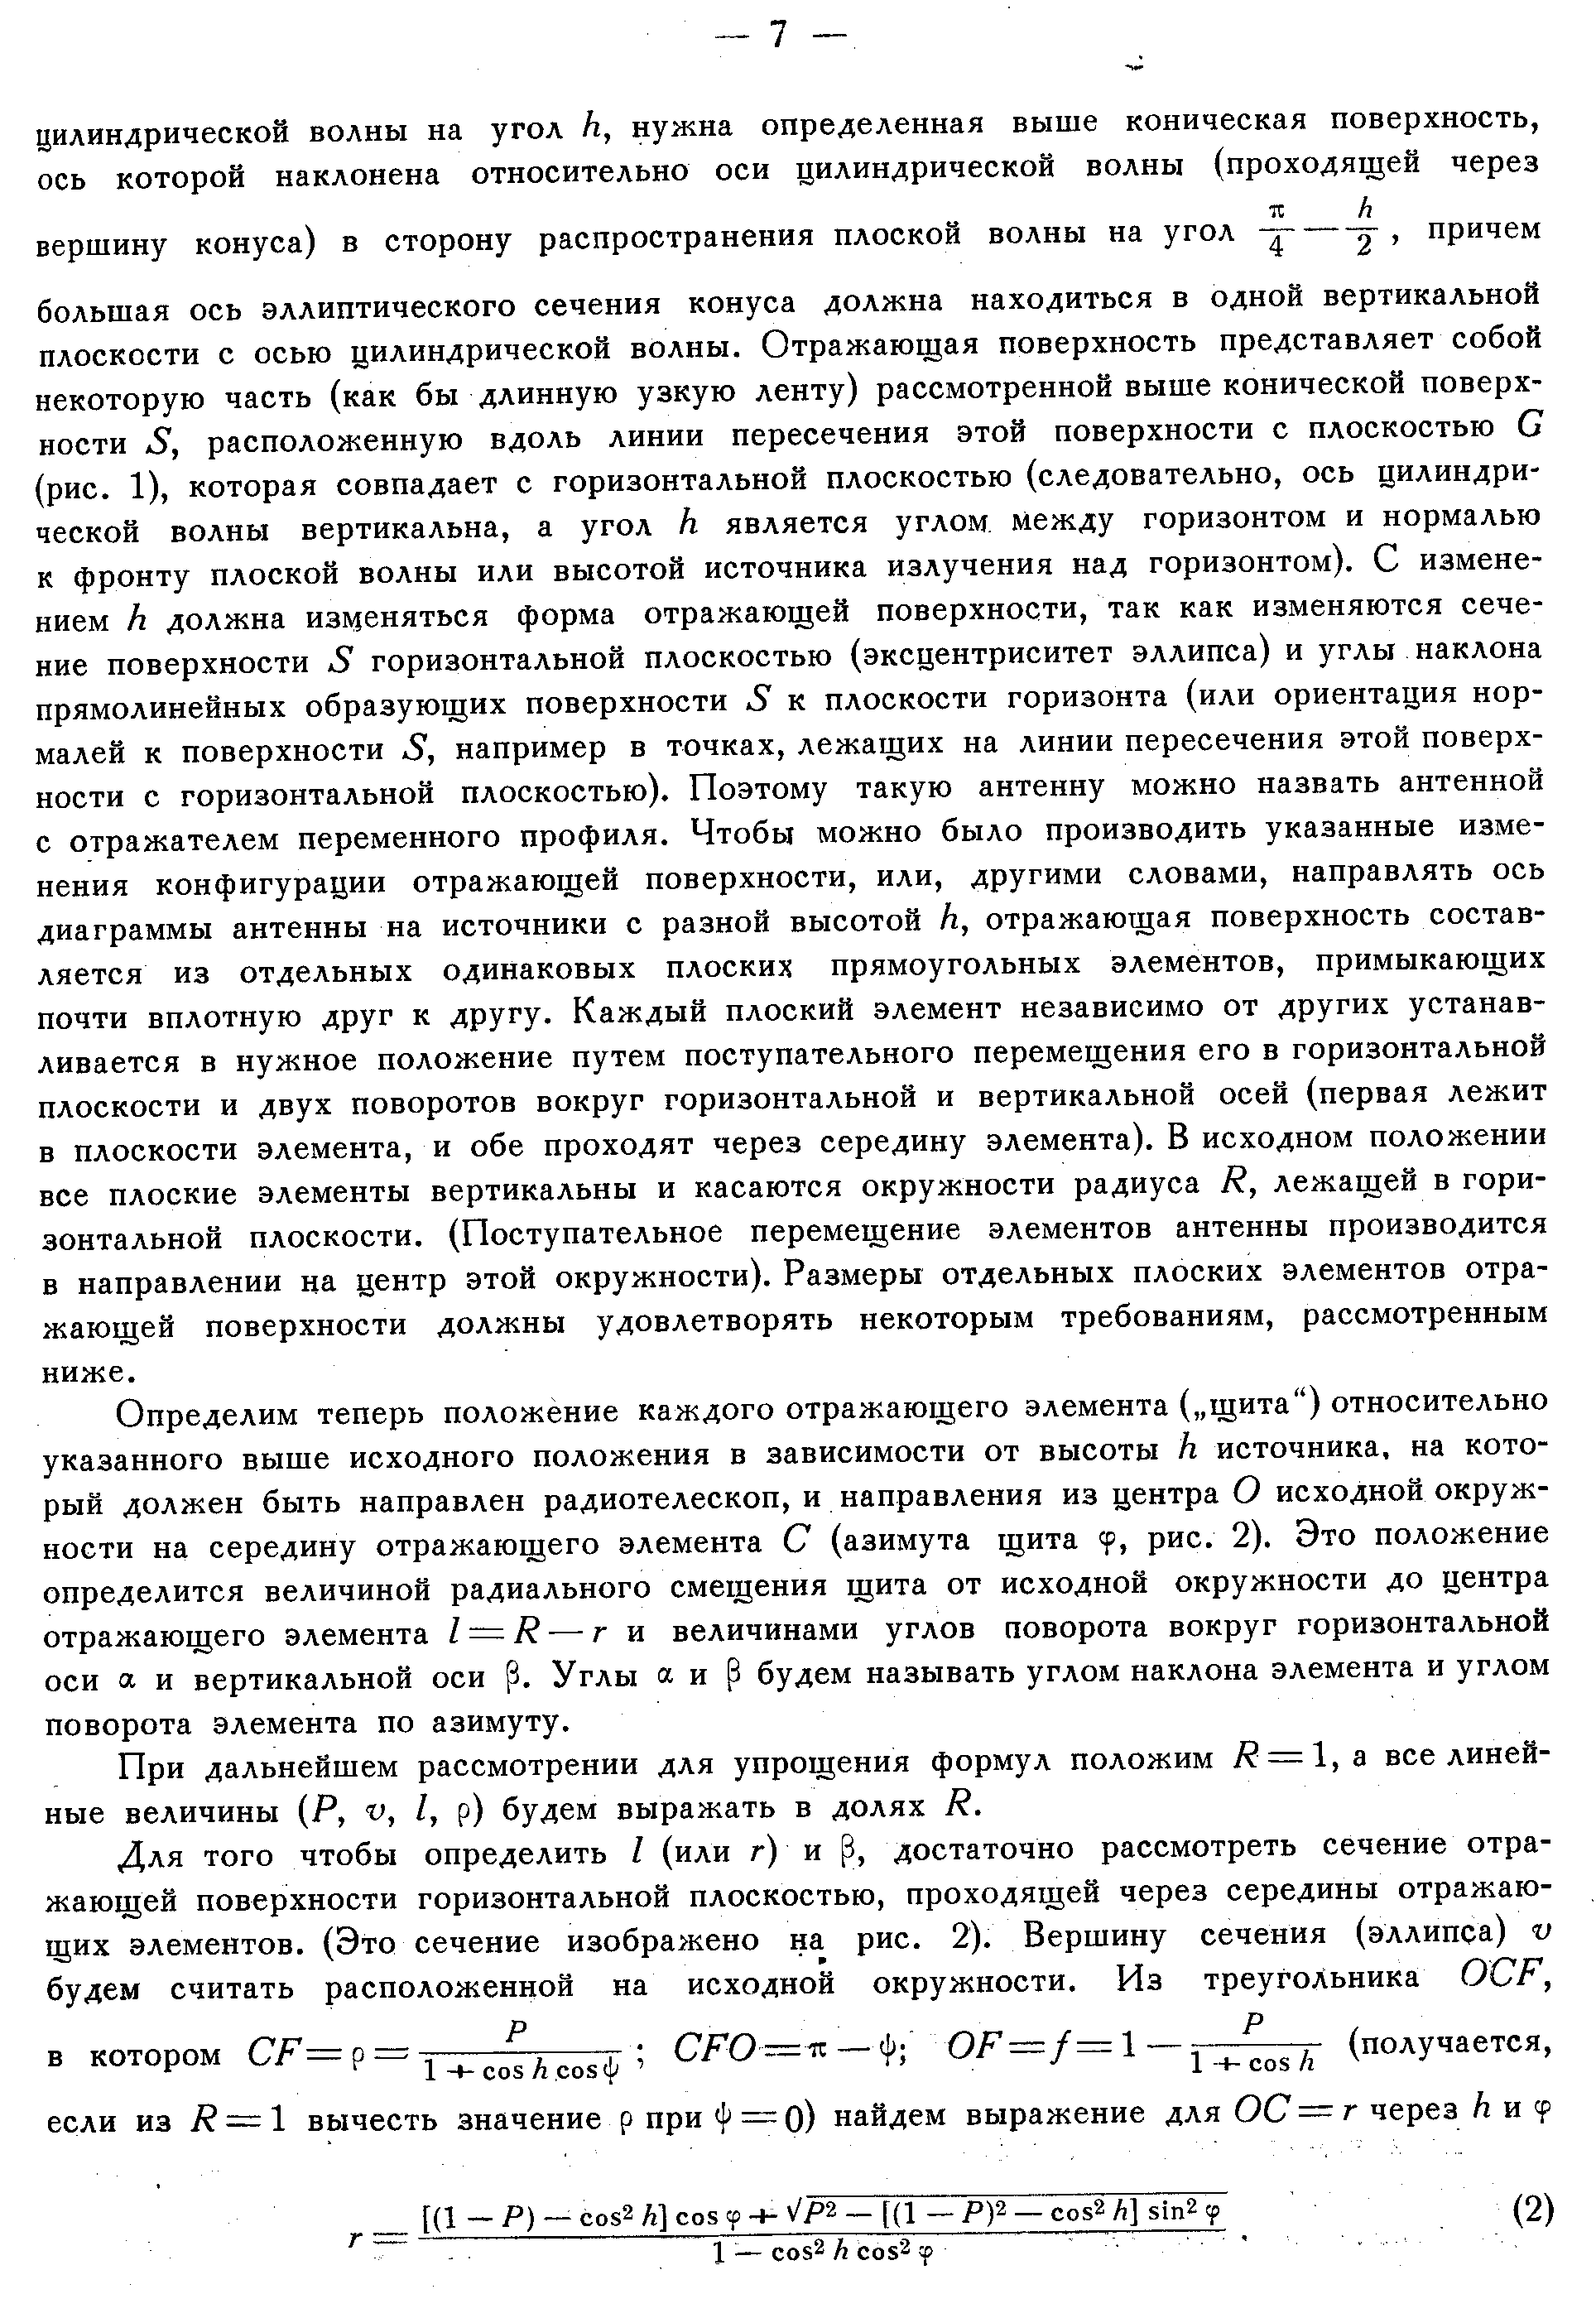 Хайкин С.Э. и др.,стр.5